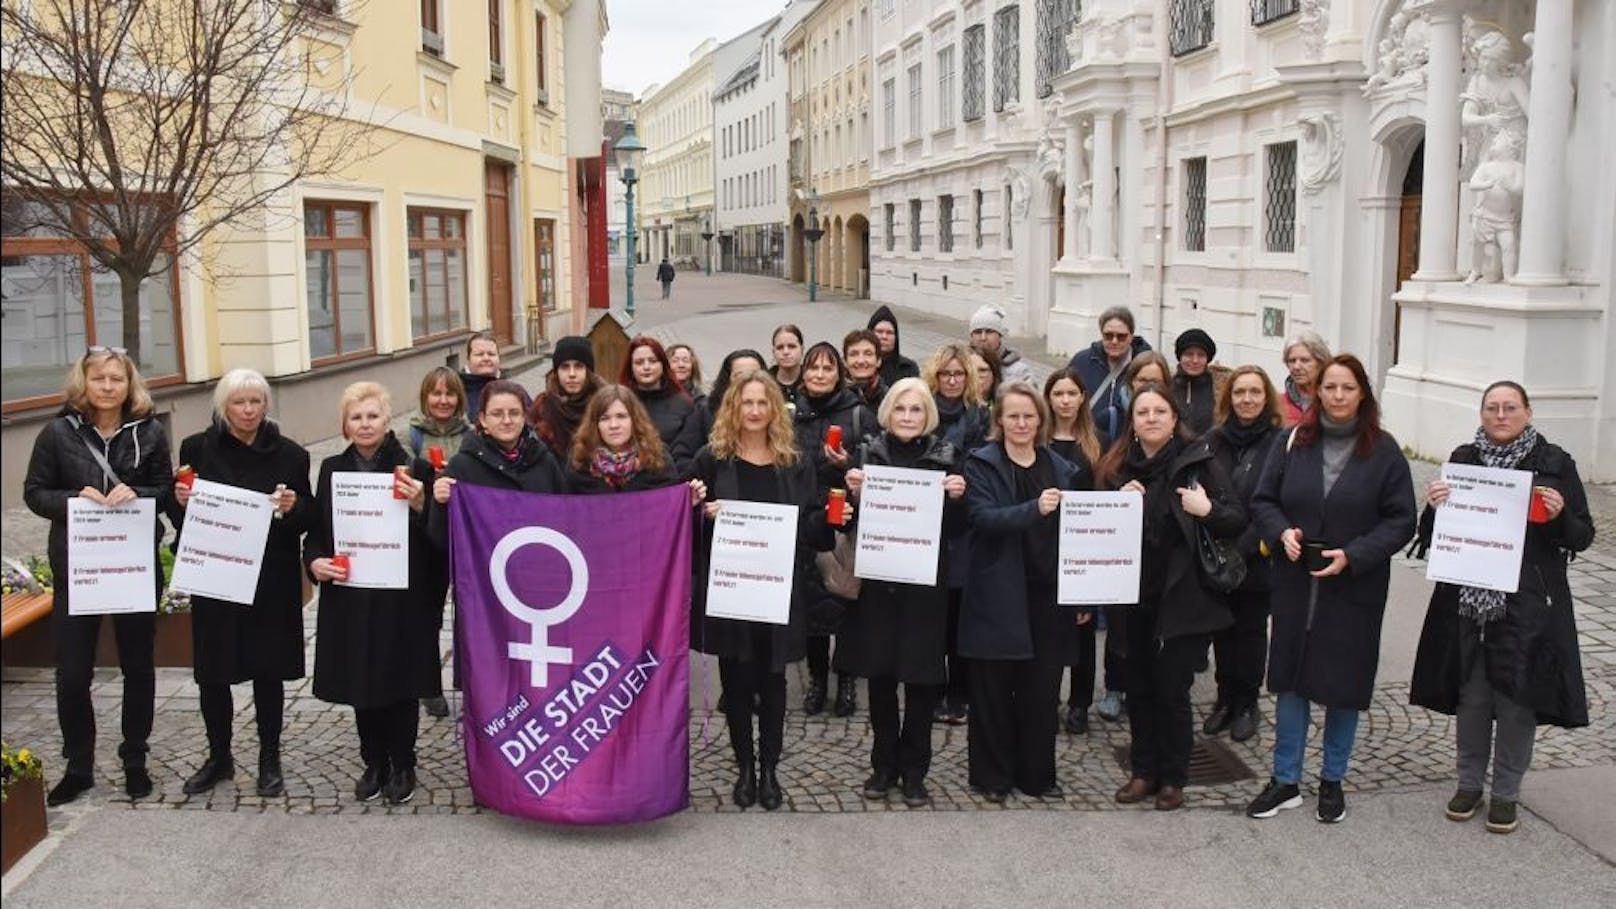 Gewalt an Frauen – "Das können wir nicht mehr dulden"